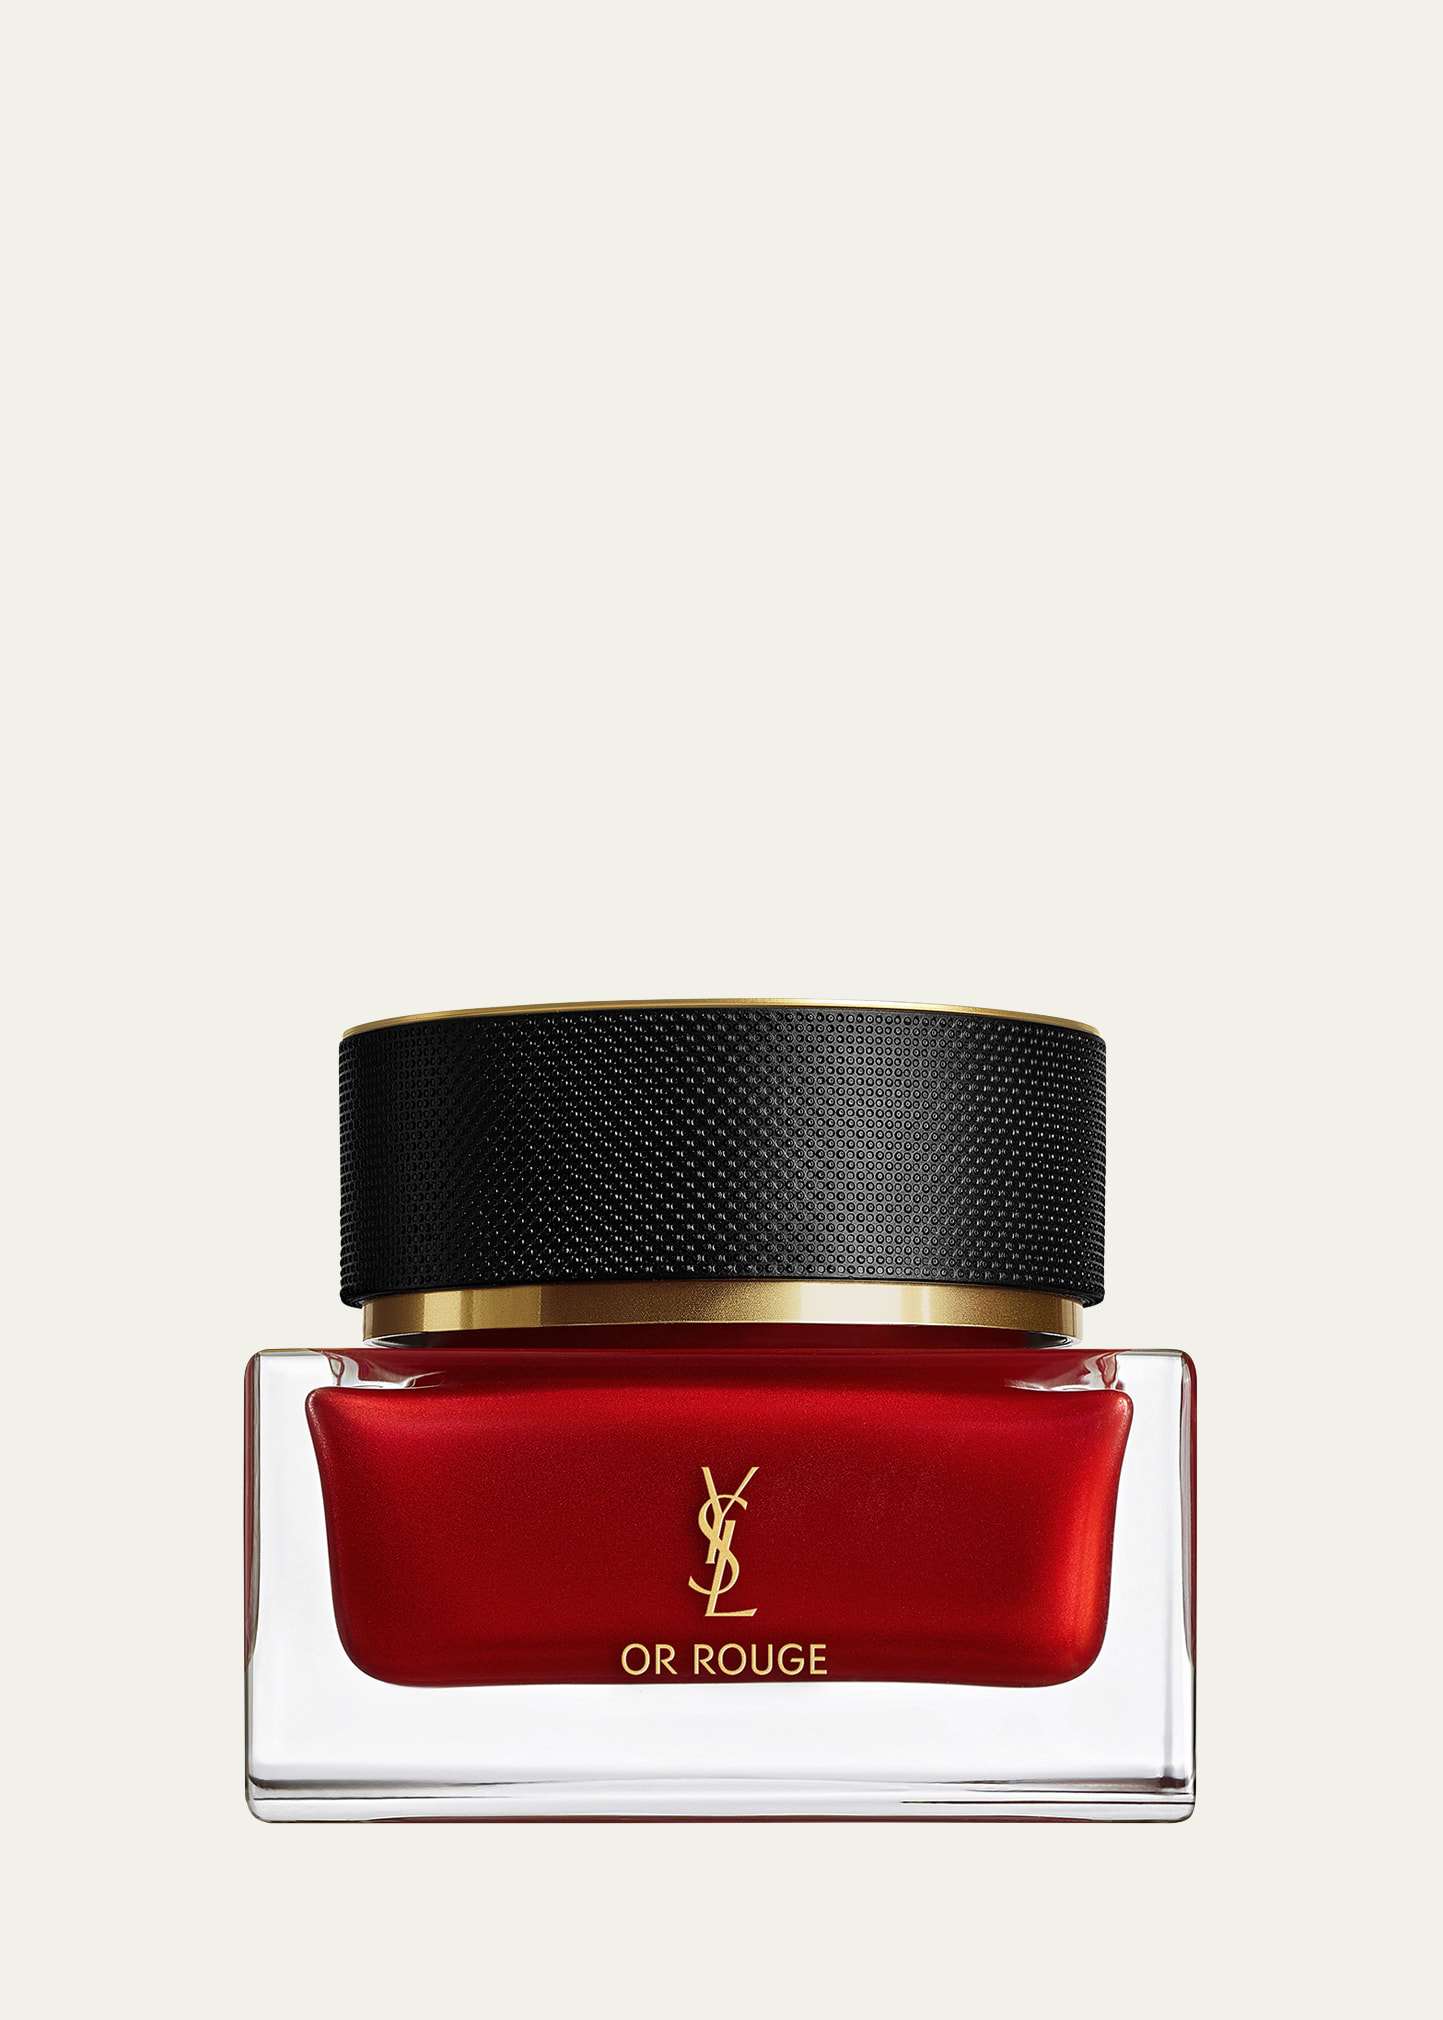 Yves Saint Laurent Beaute OR Rouge Cream Regard, 0.5 oz.